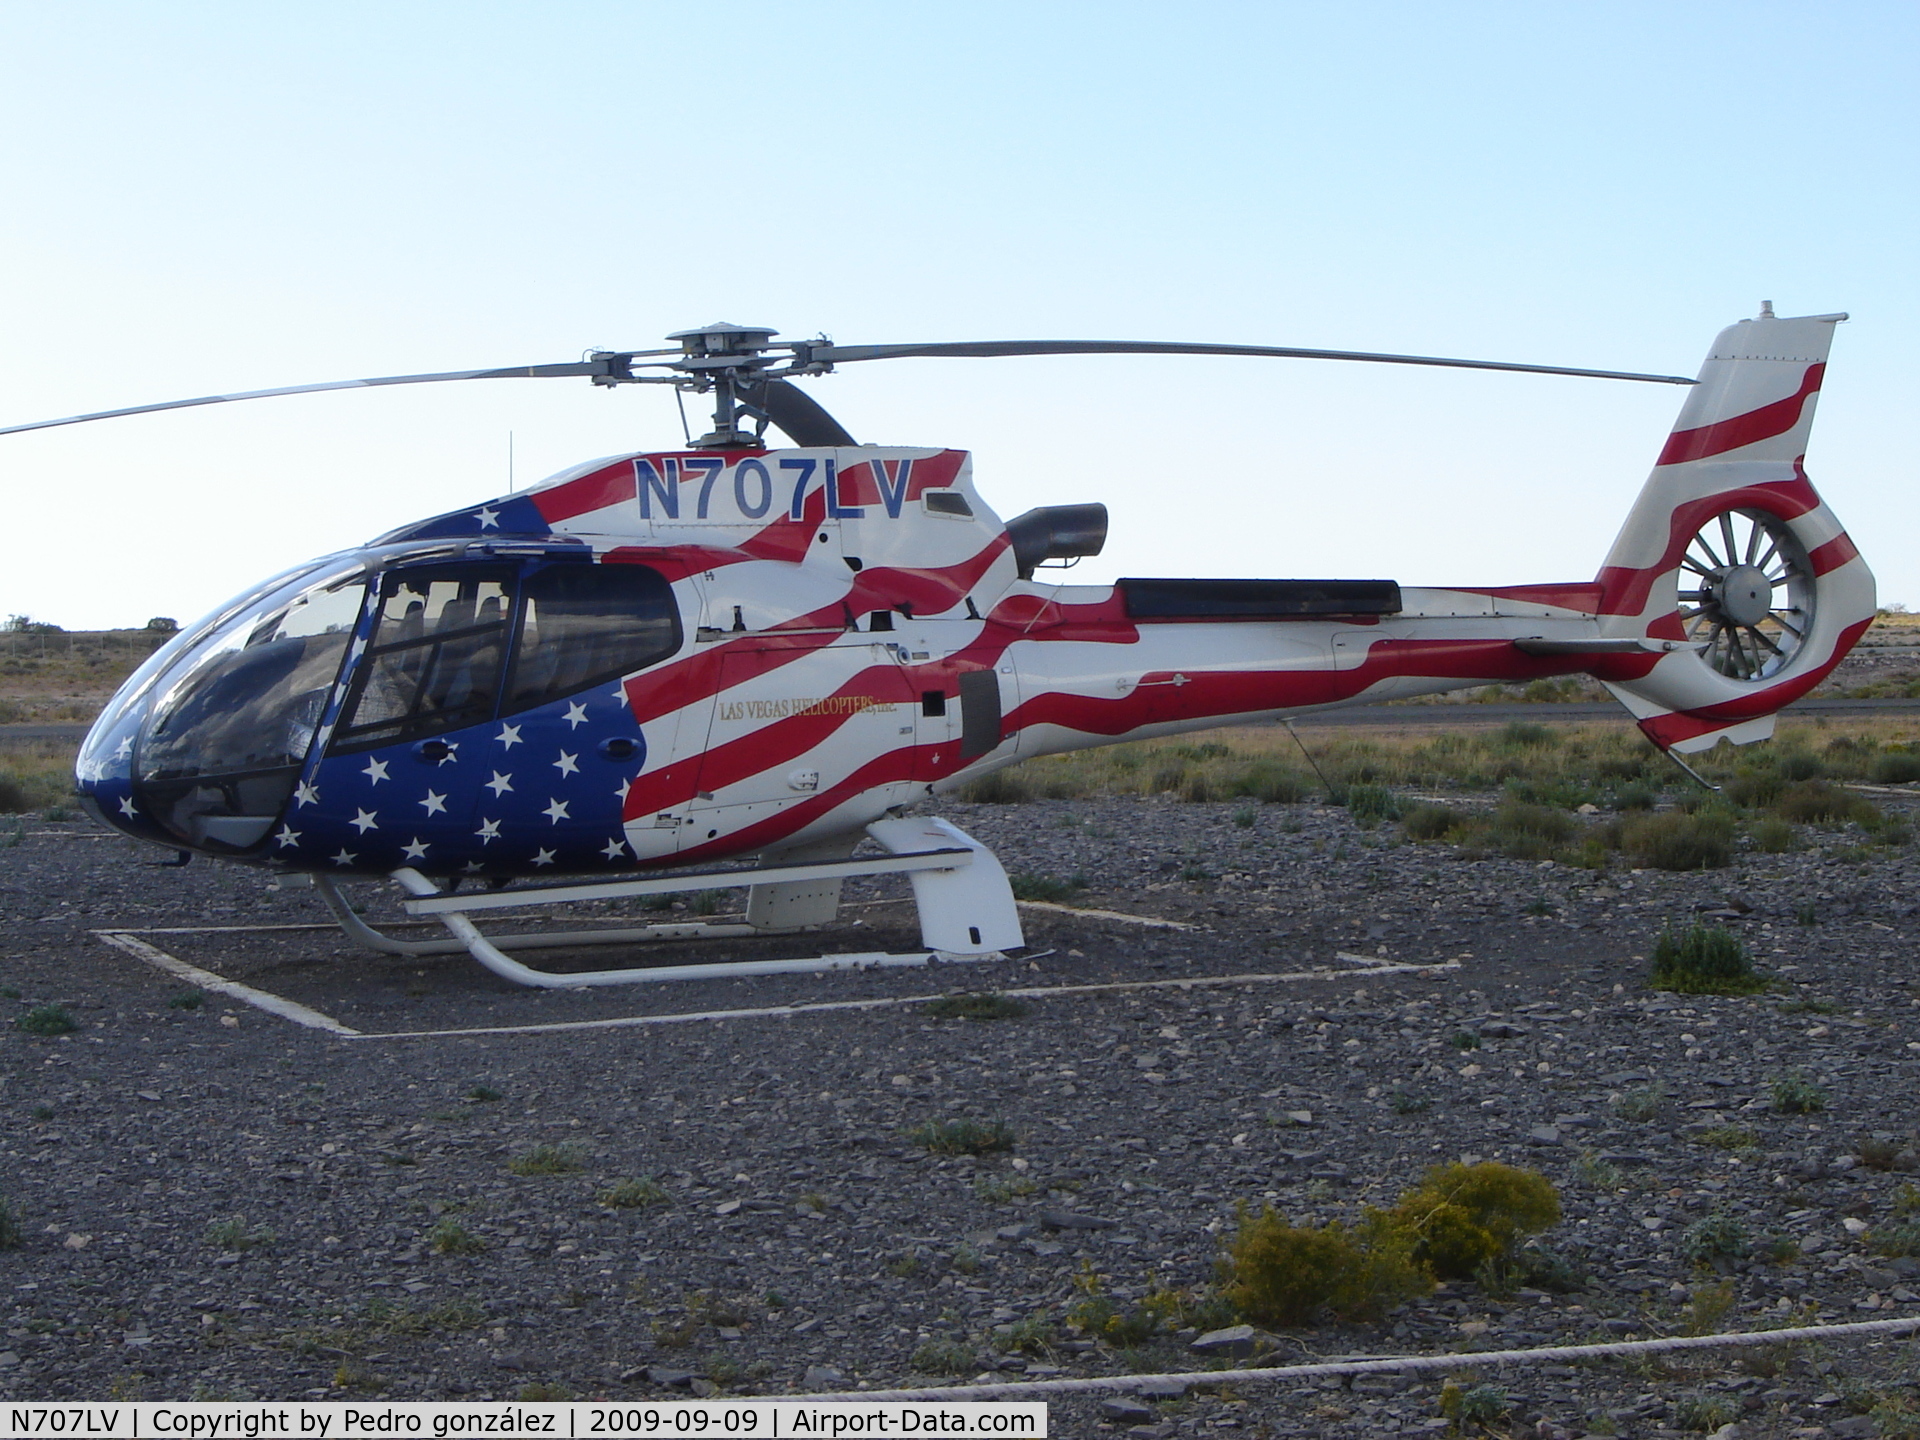 N707LV, 2008 Eurocopter EC-130B-4 (AS-350B-4) C/N 4388, N707LV In Grand Canyon